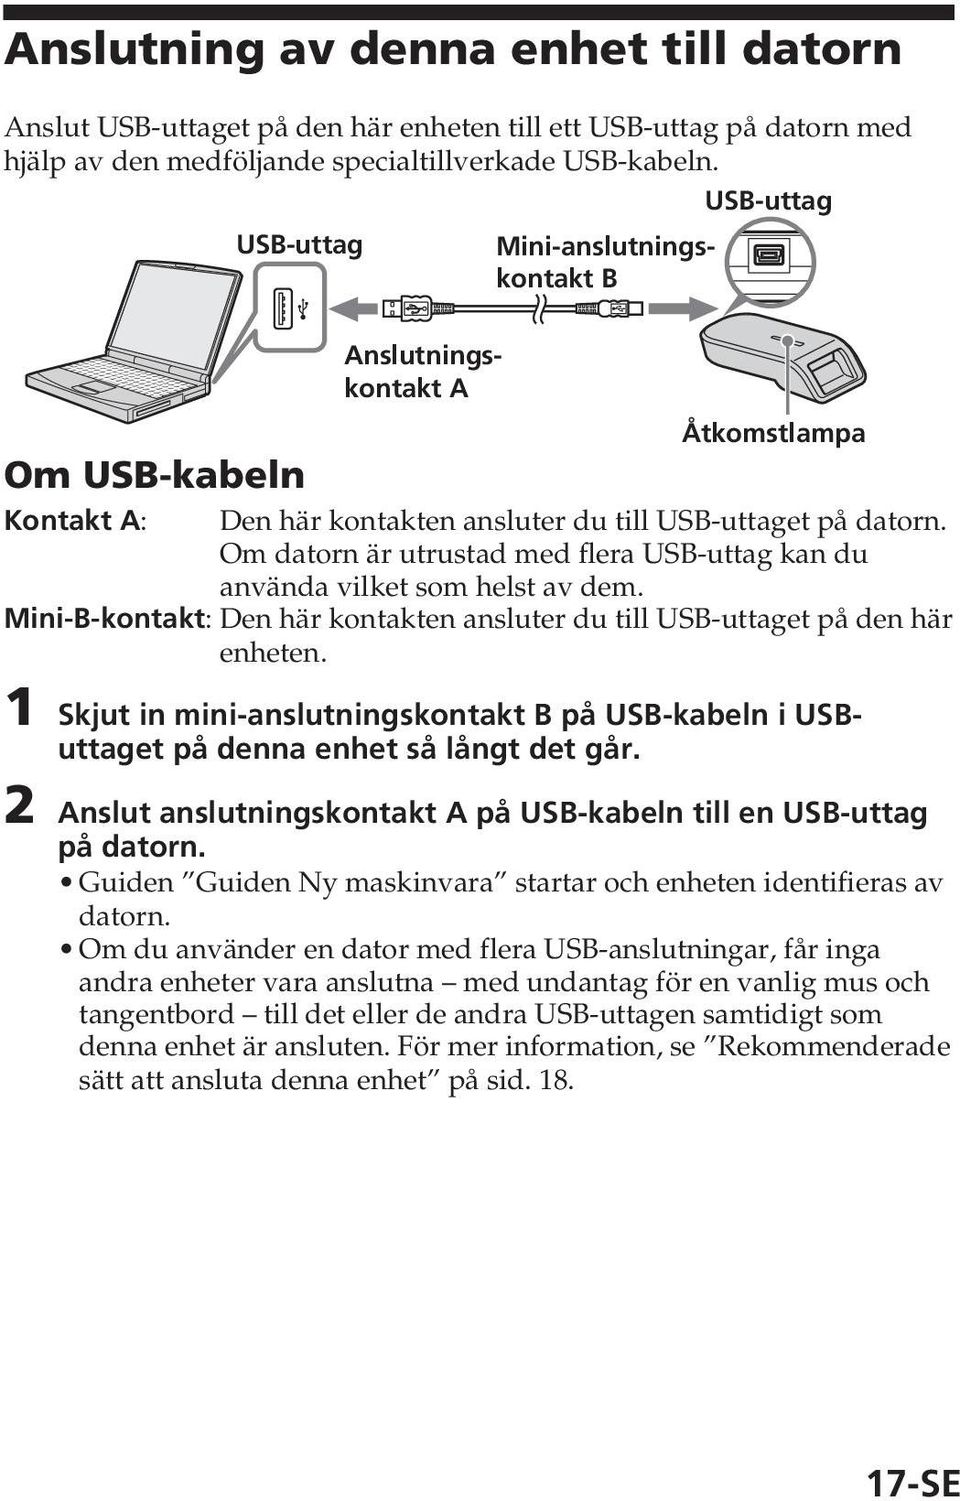 Om datorn är utrustad med flera USB-uttag kan du använda vilket som helst av dem. Mini-B-kontakt: Den här kontakten ansluter du till USB-uttaget på den här enheten.